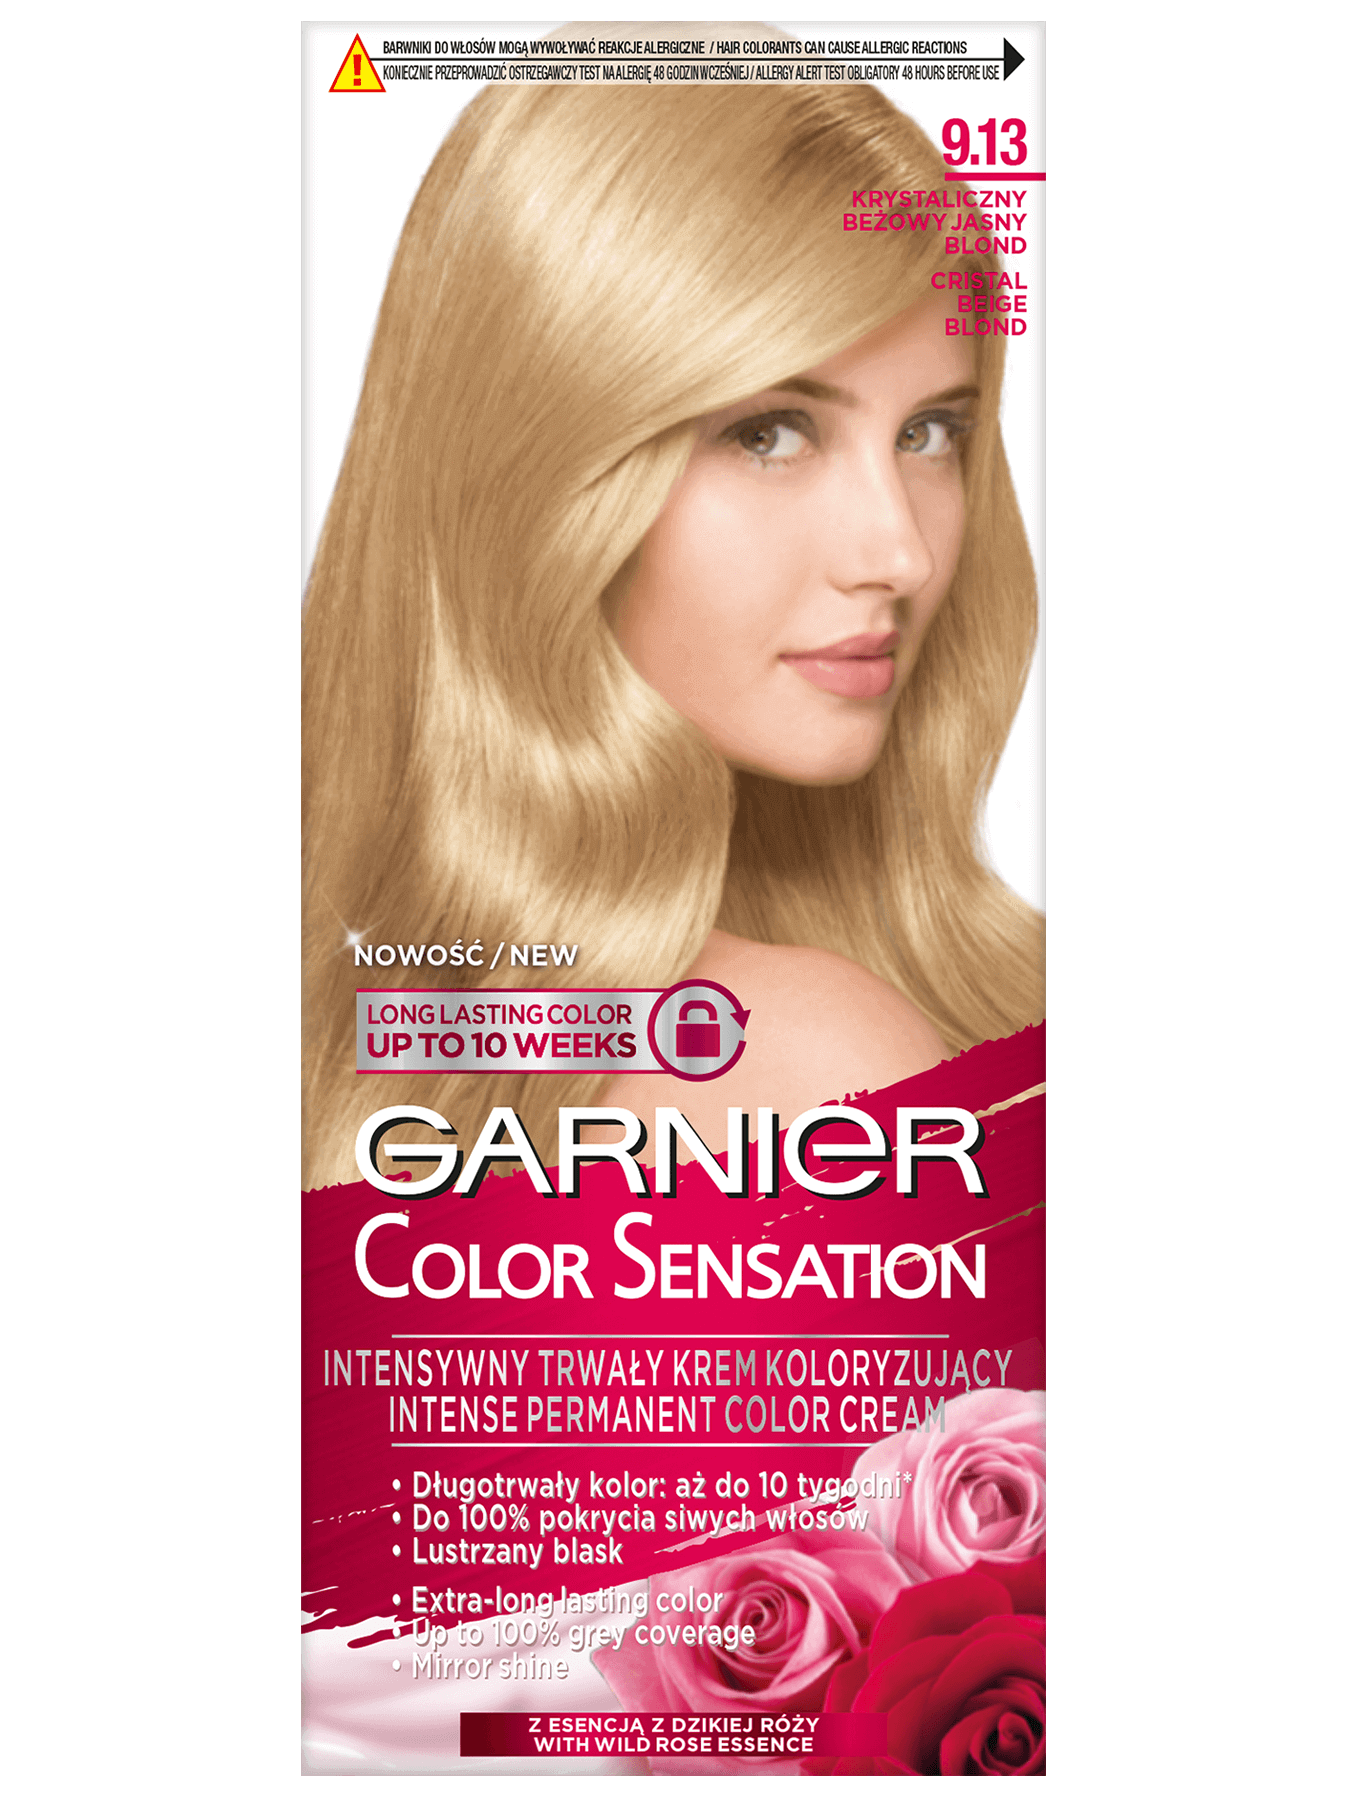 garnier color sensation 9 1 3 krystaliczny bezowy jasny blond 1350x1800